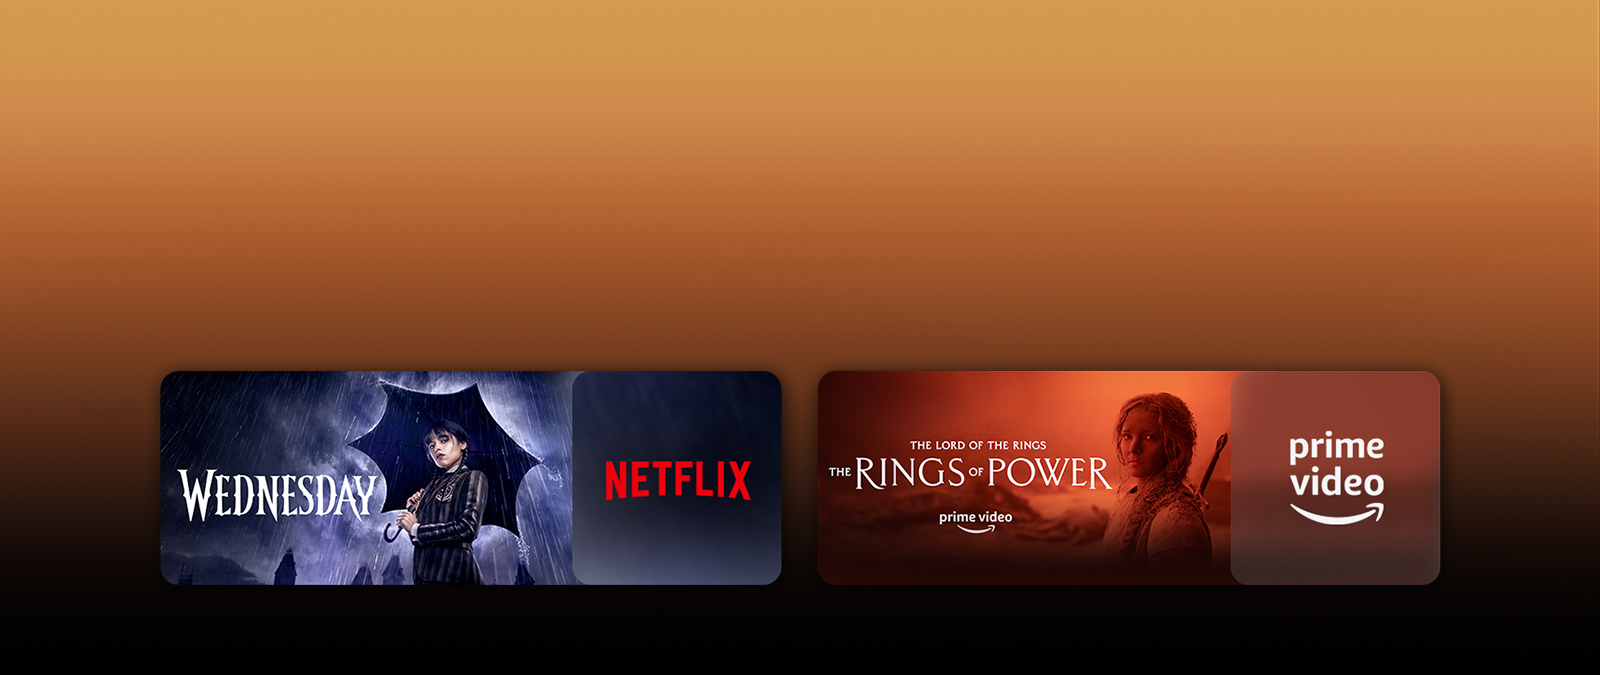 Les logos de plateformes de services de streaming et les séquences correspondantes se trouvent juste à côté de chaque logo. On trouve des images de Wednesday sur Netflix et de The rings of power sur PRIME VIDEO.